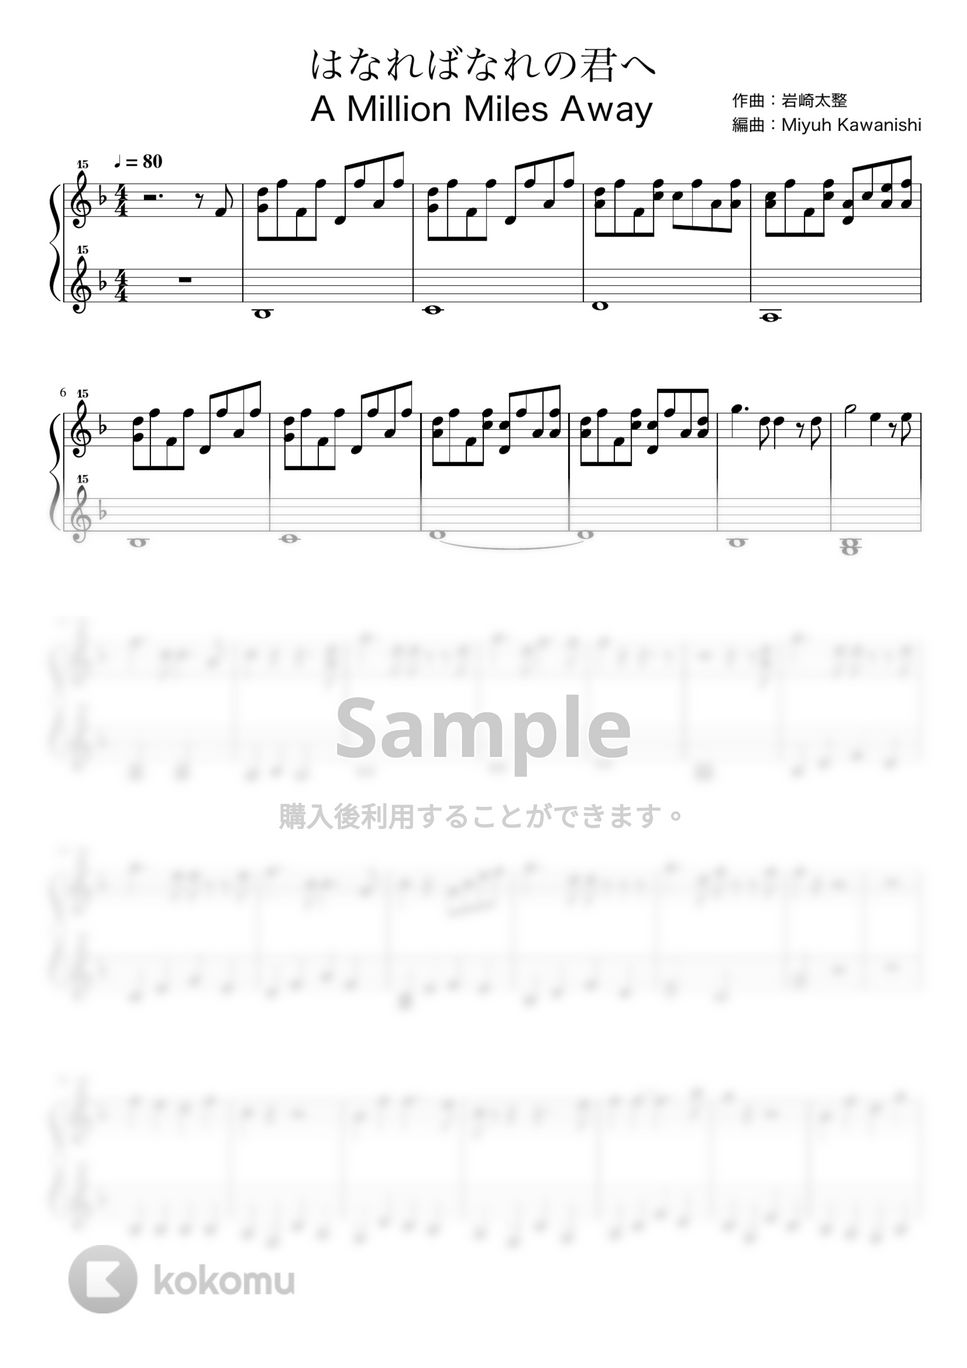 岩崎太整 - はなればなれの君へ 竜とそばかすの姫 (竜とそばかすの姫 / トイピアノ / 32鍵盤) by 川西三裕